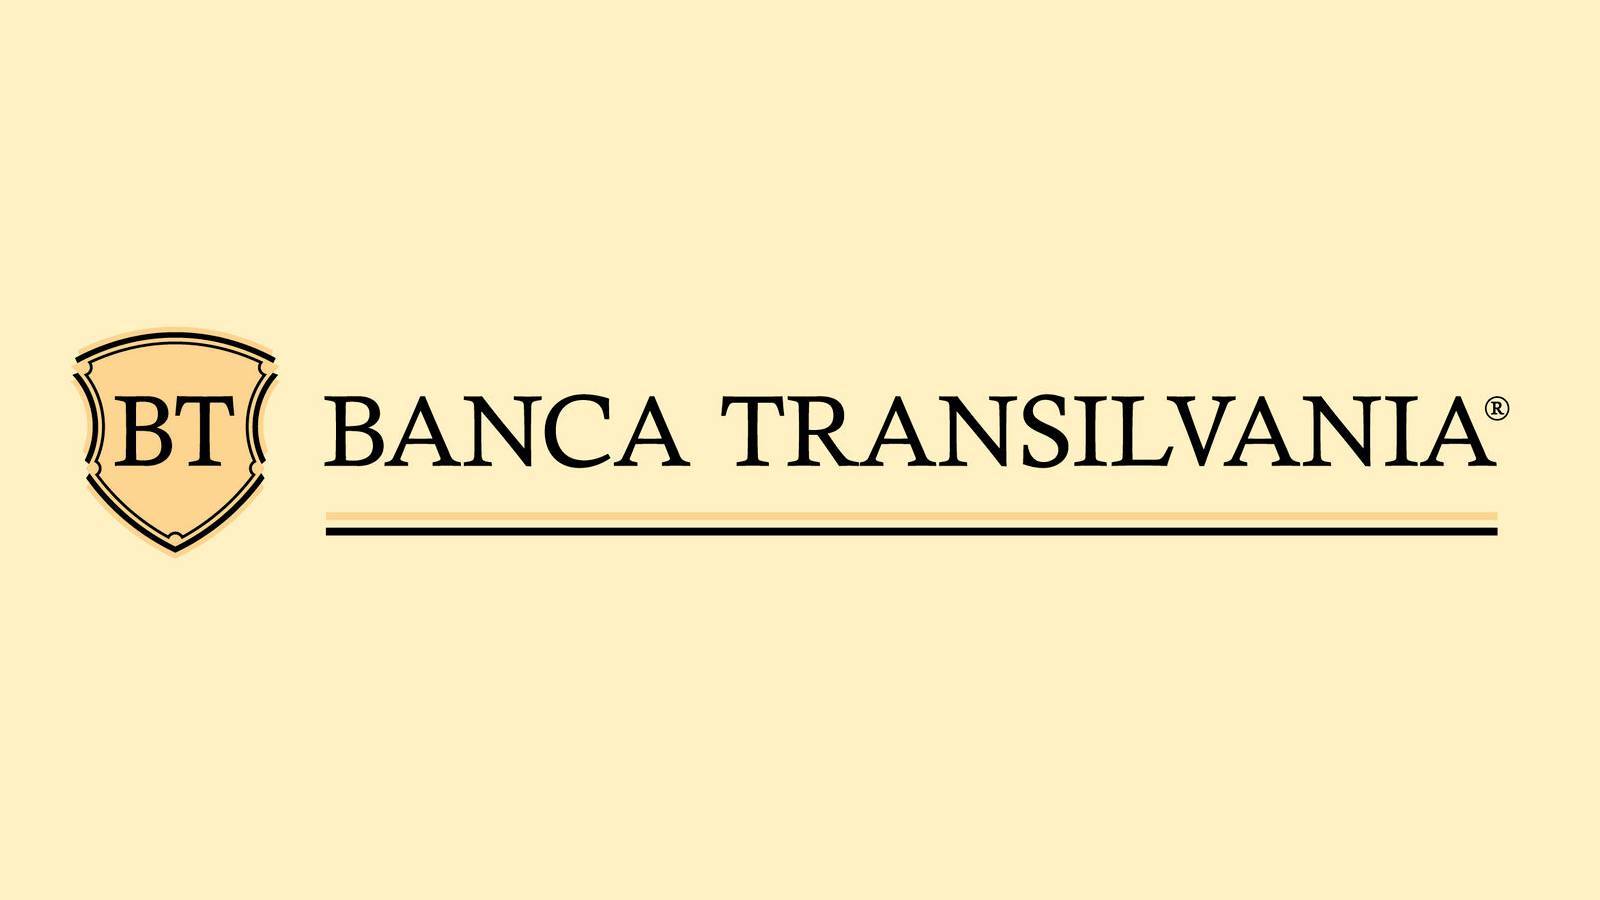 BANCA Transilvania Notificare Oficiala Ofera GRATUIT Exclusiv Astazi